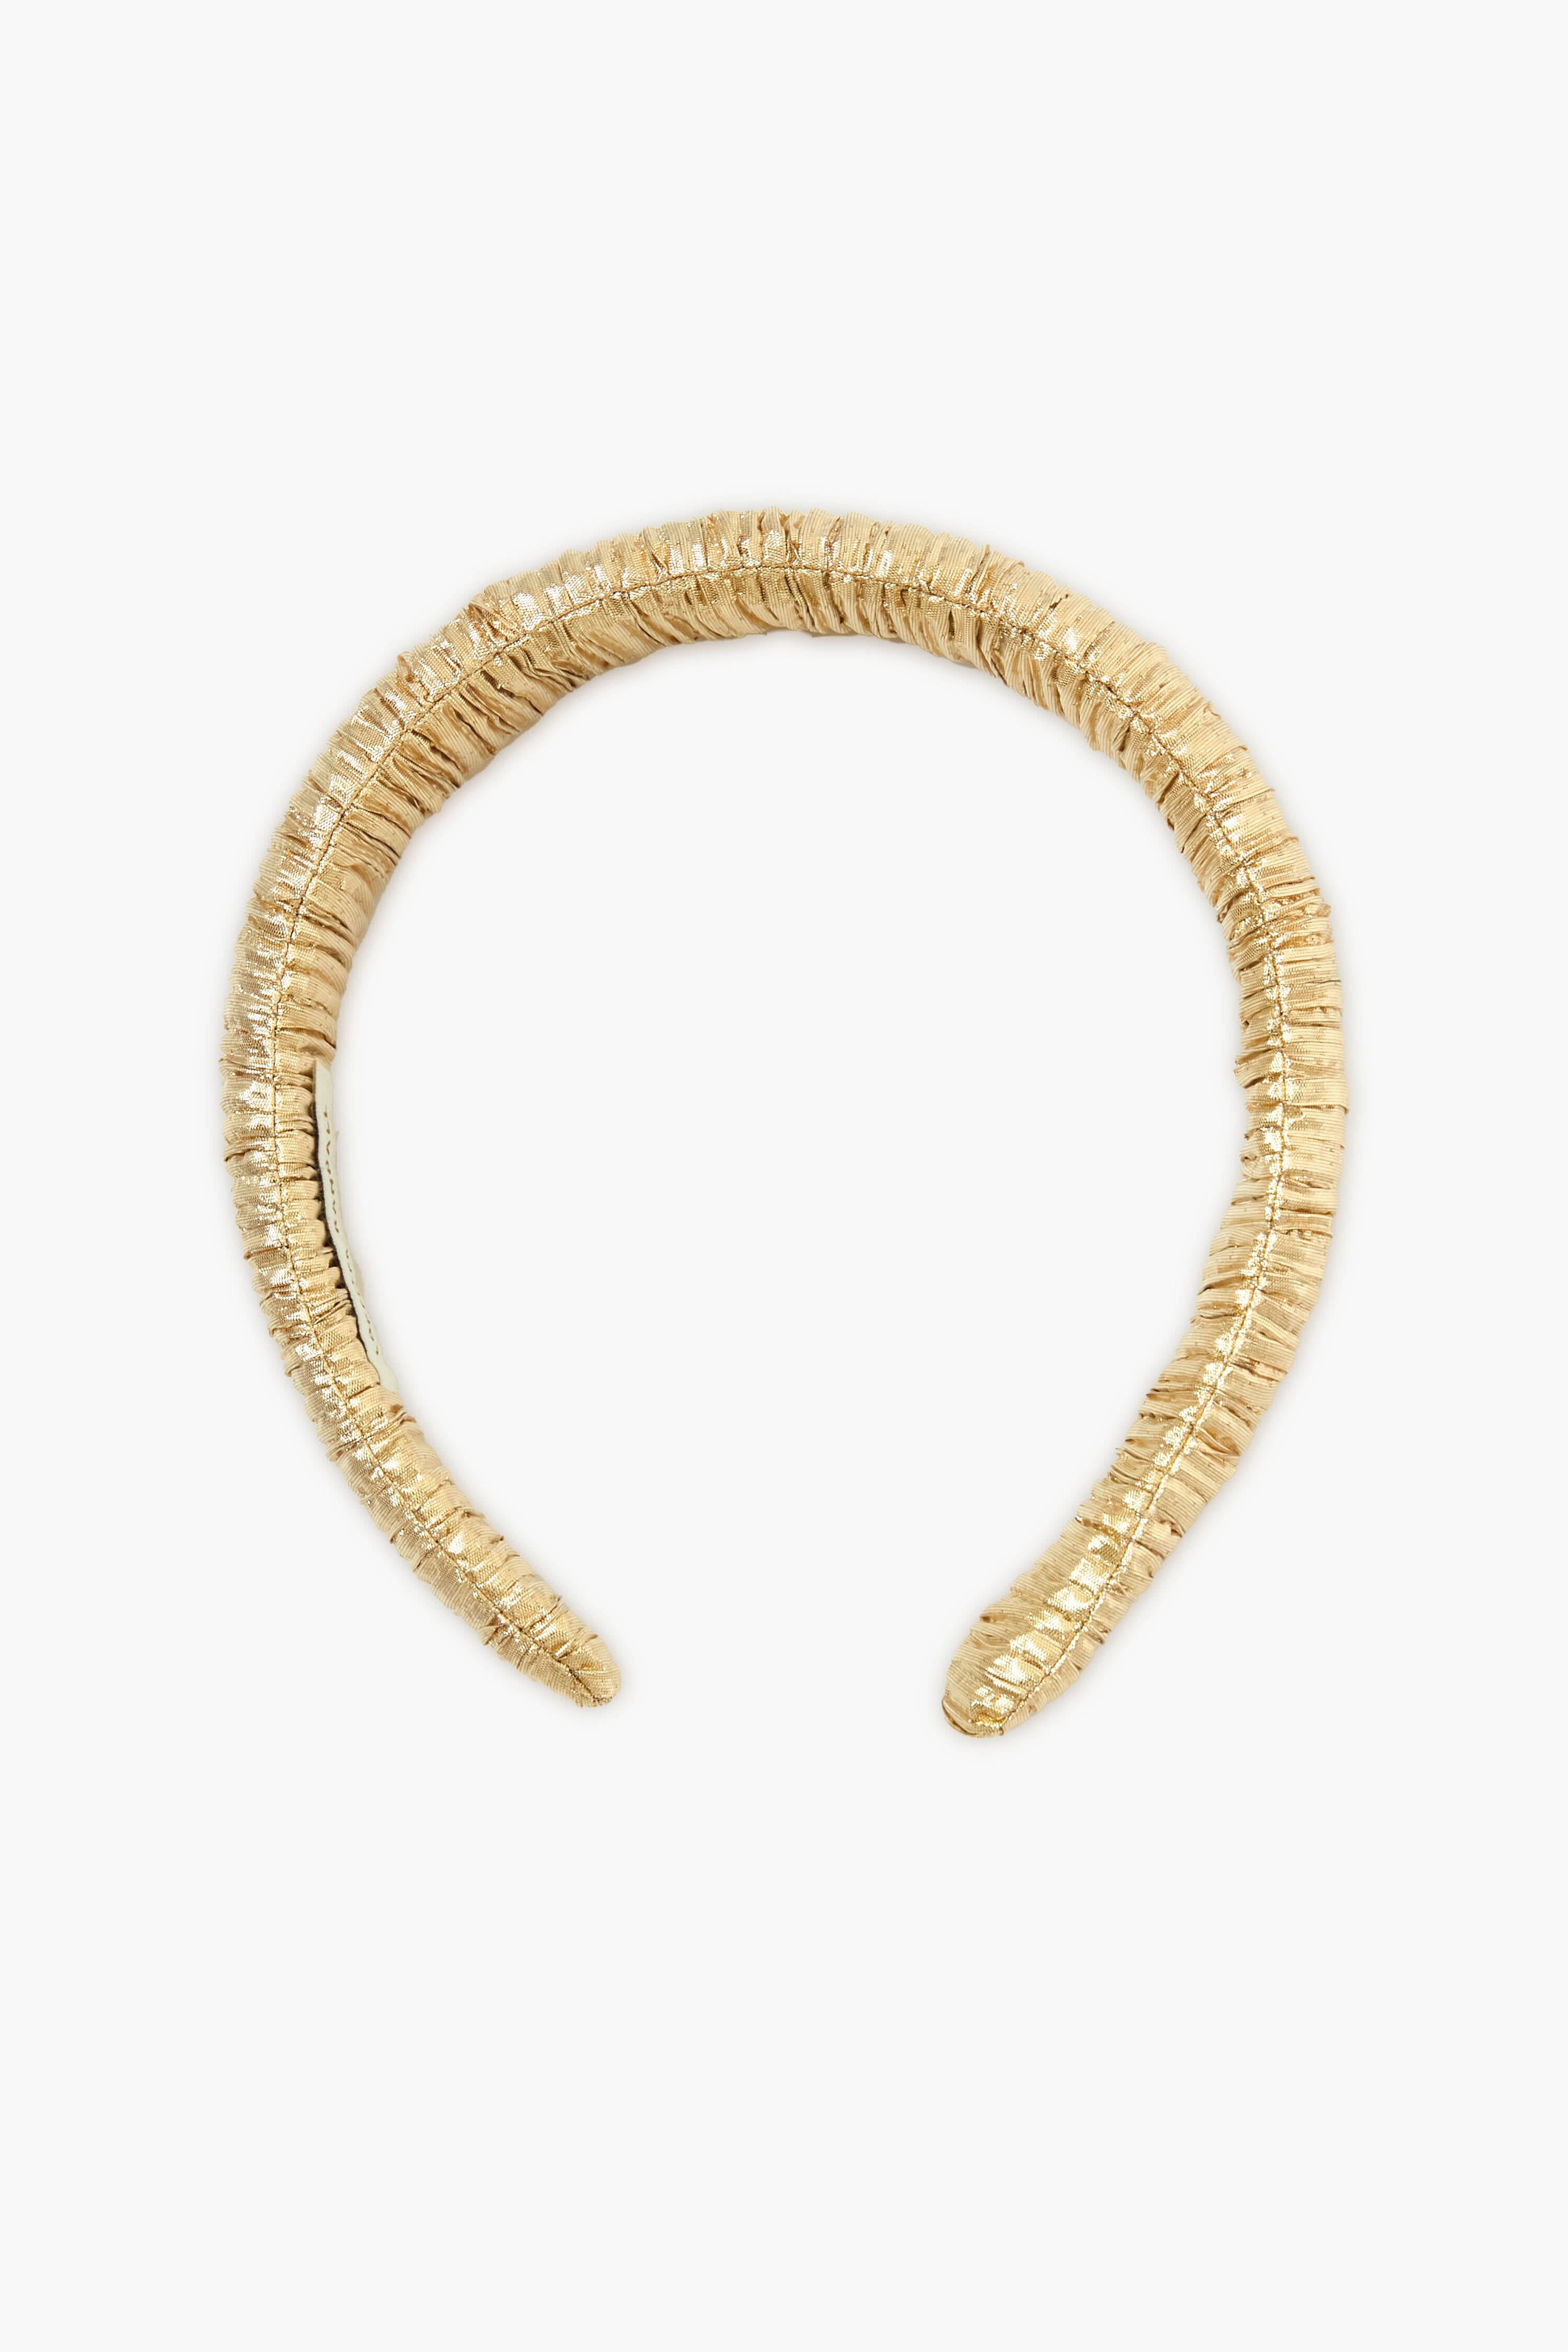 Embellished Rhinestone Rope Ribbon Headband Gold - Pack of 6